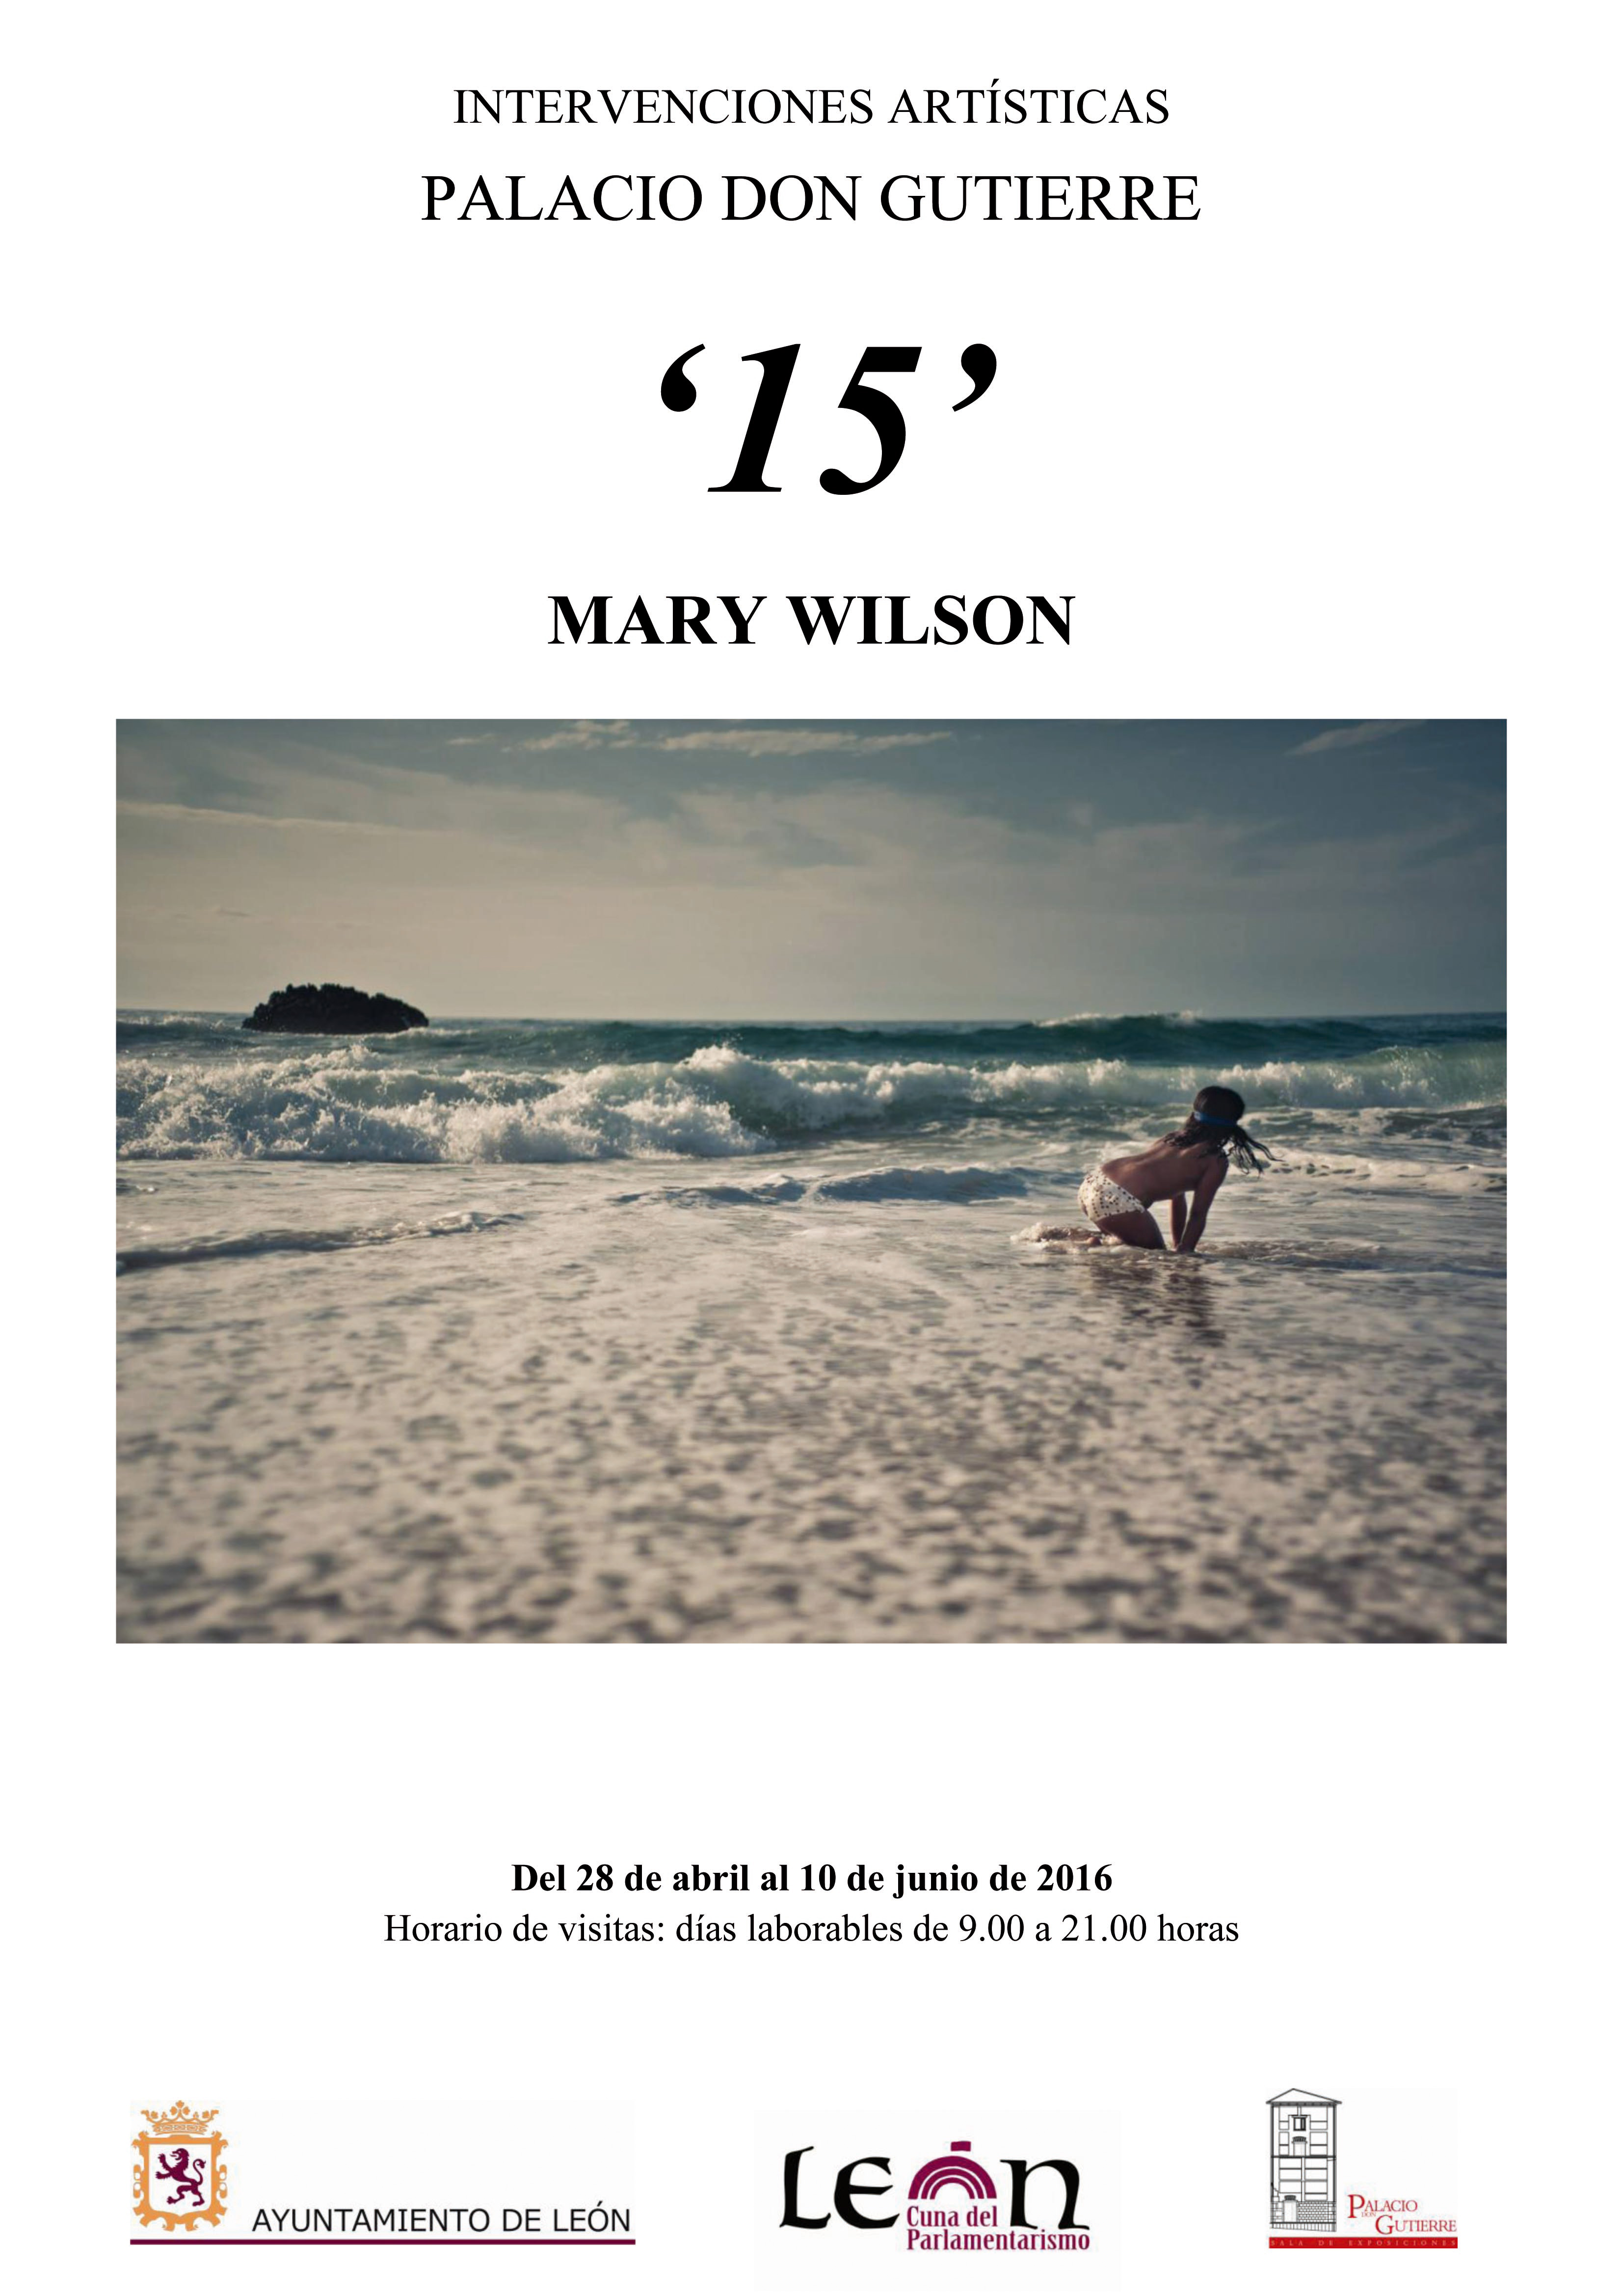 Mary Wilson